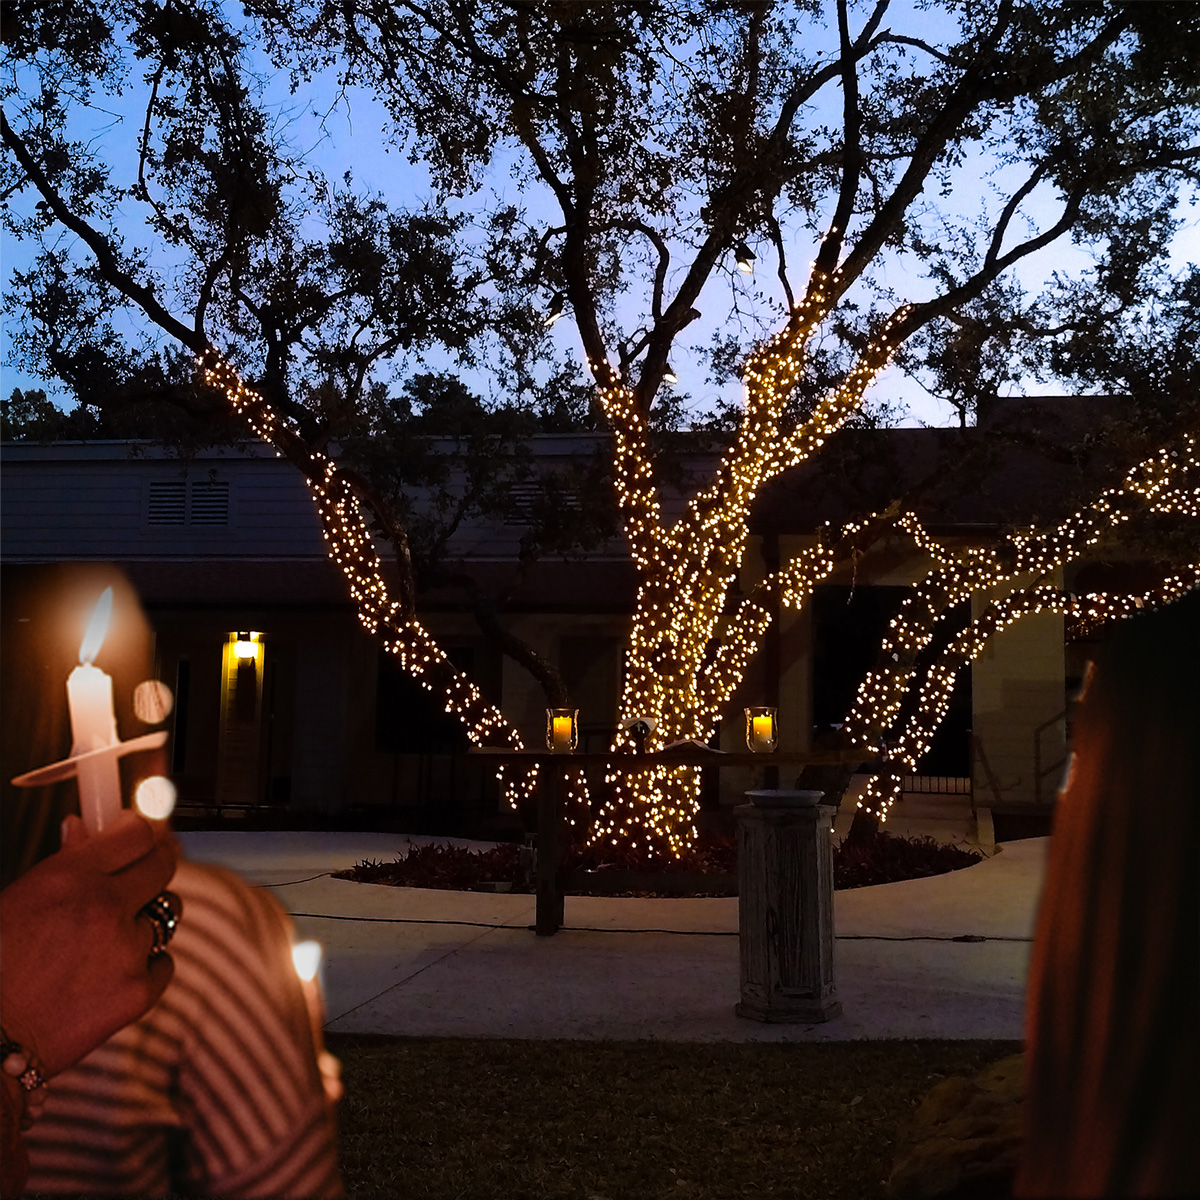 Christmas lights and candles